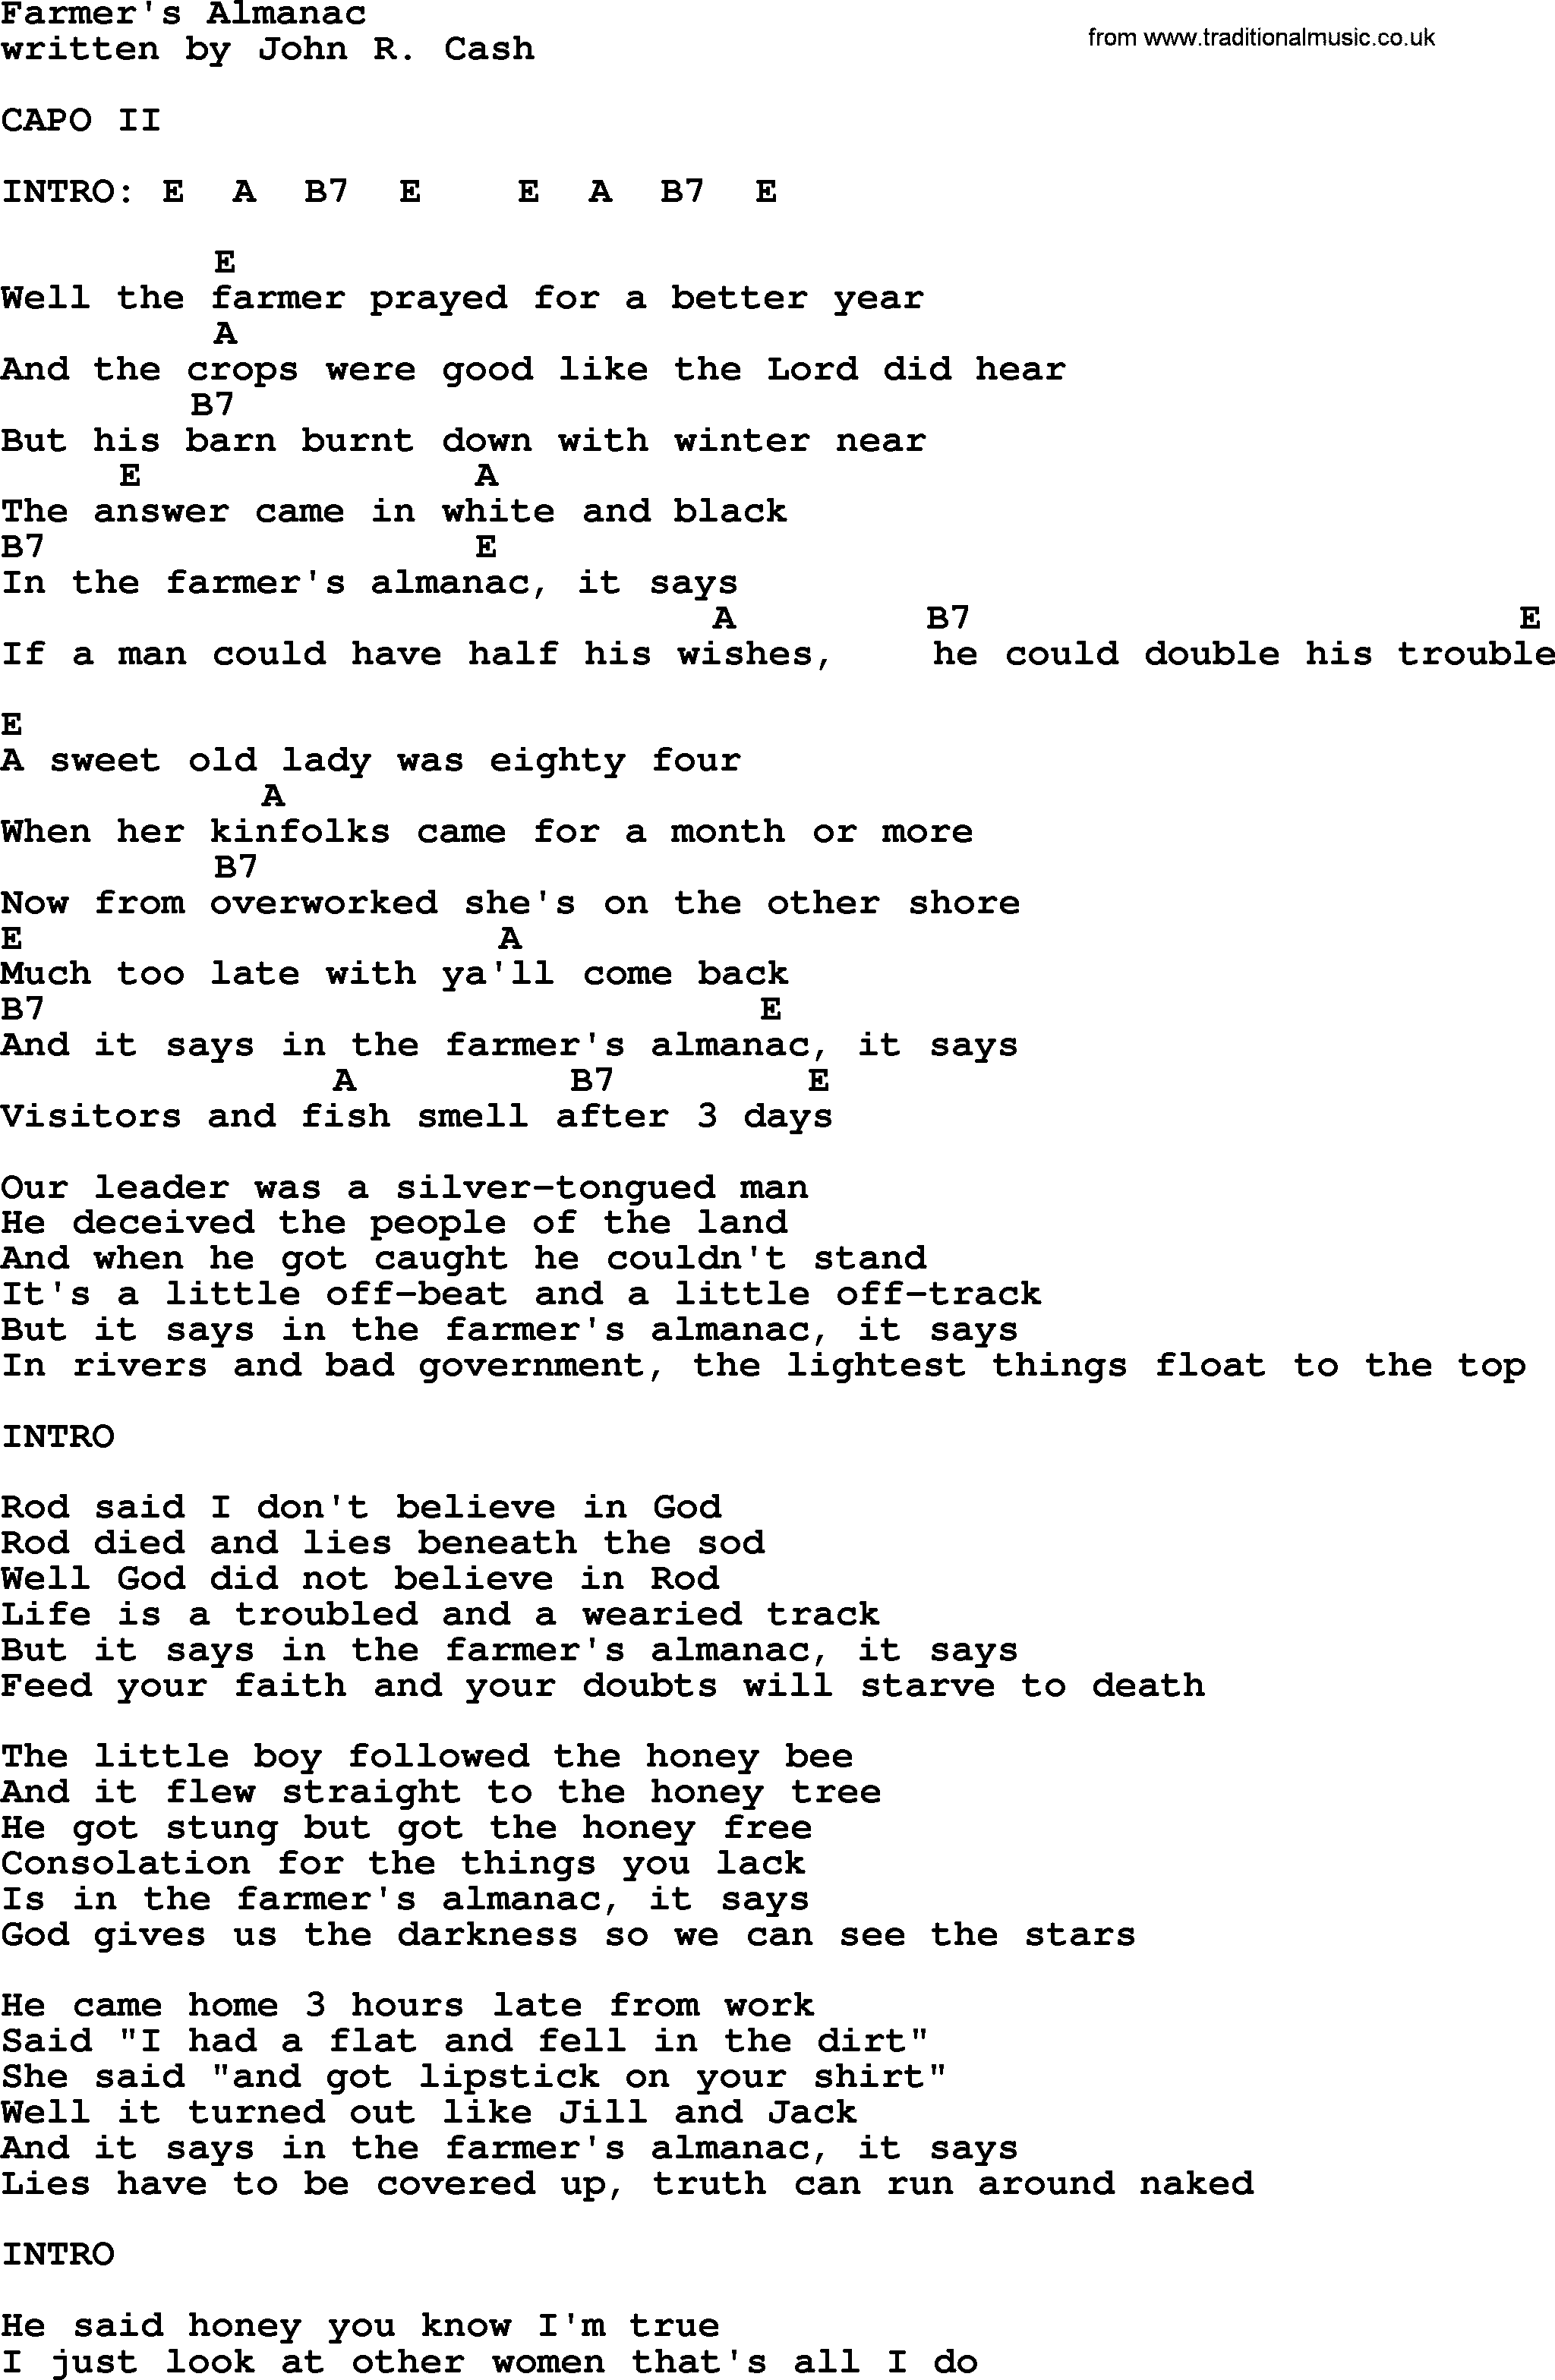 Johnny Cash song Farmer's Almanac, lyrics and chords